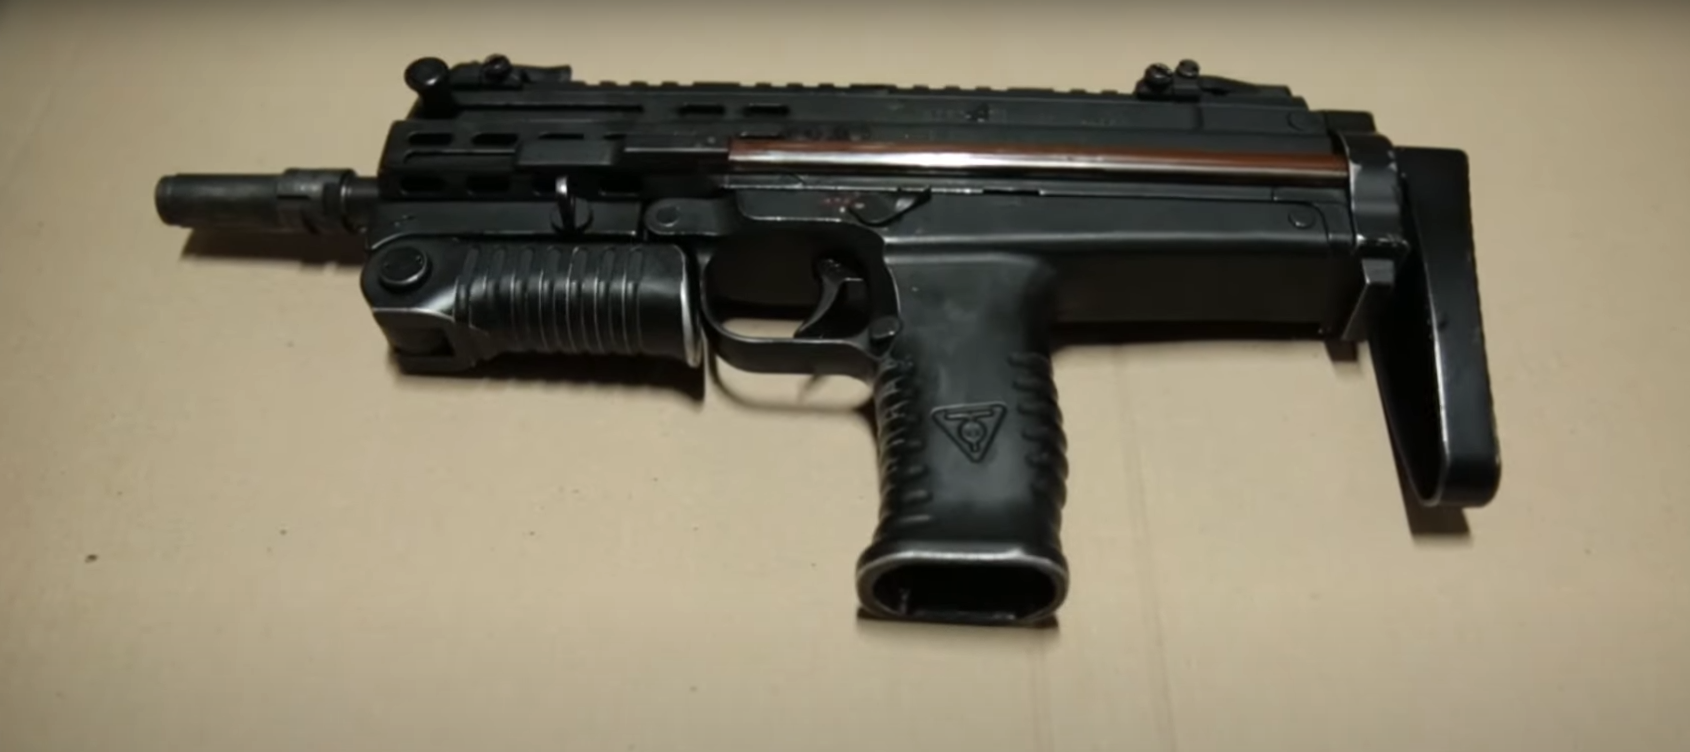 Український пістолет-кулемет проходить заводські випробування.